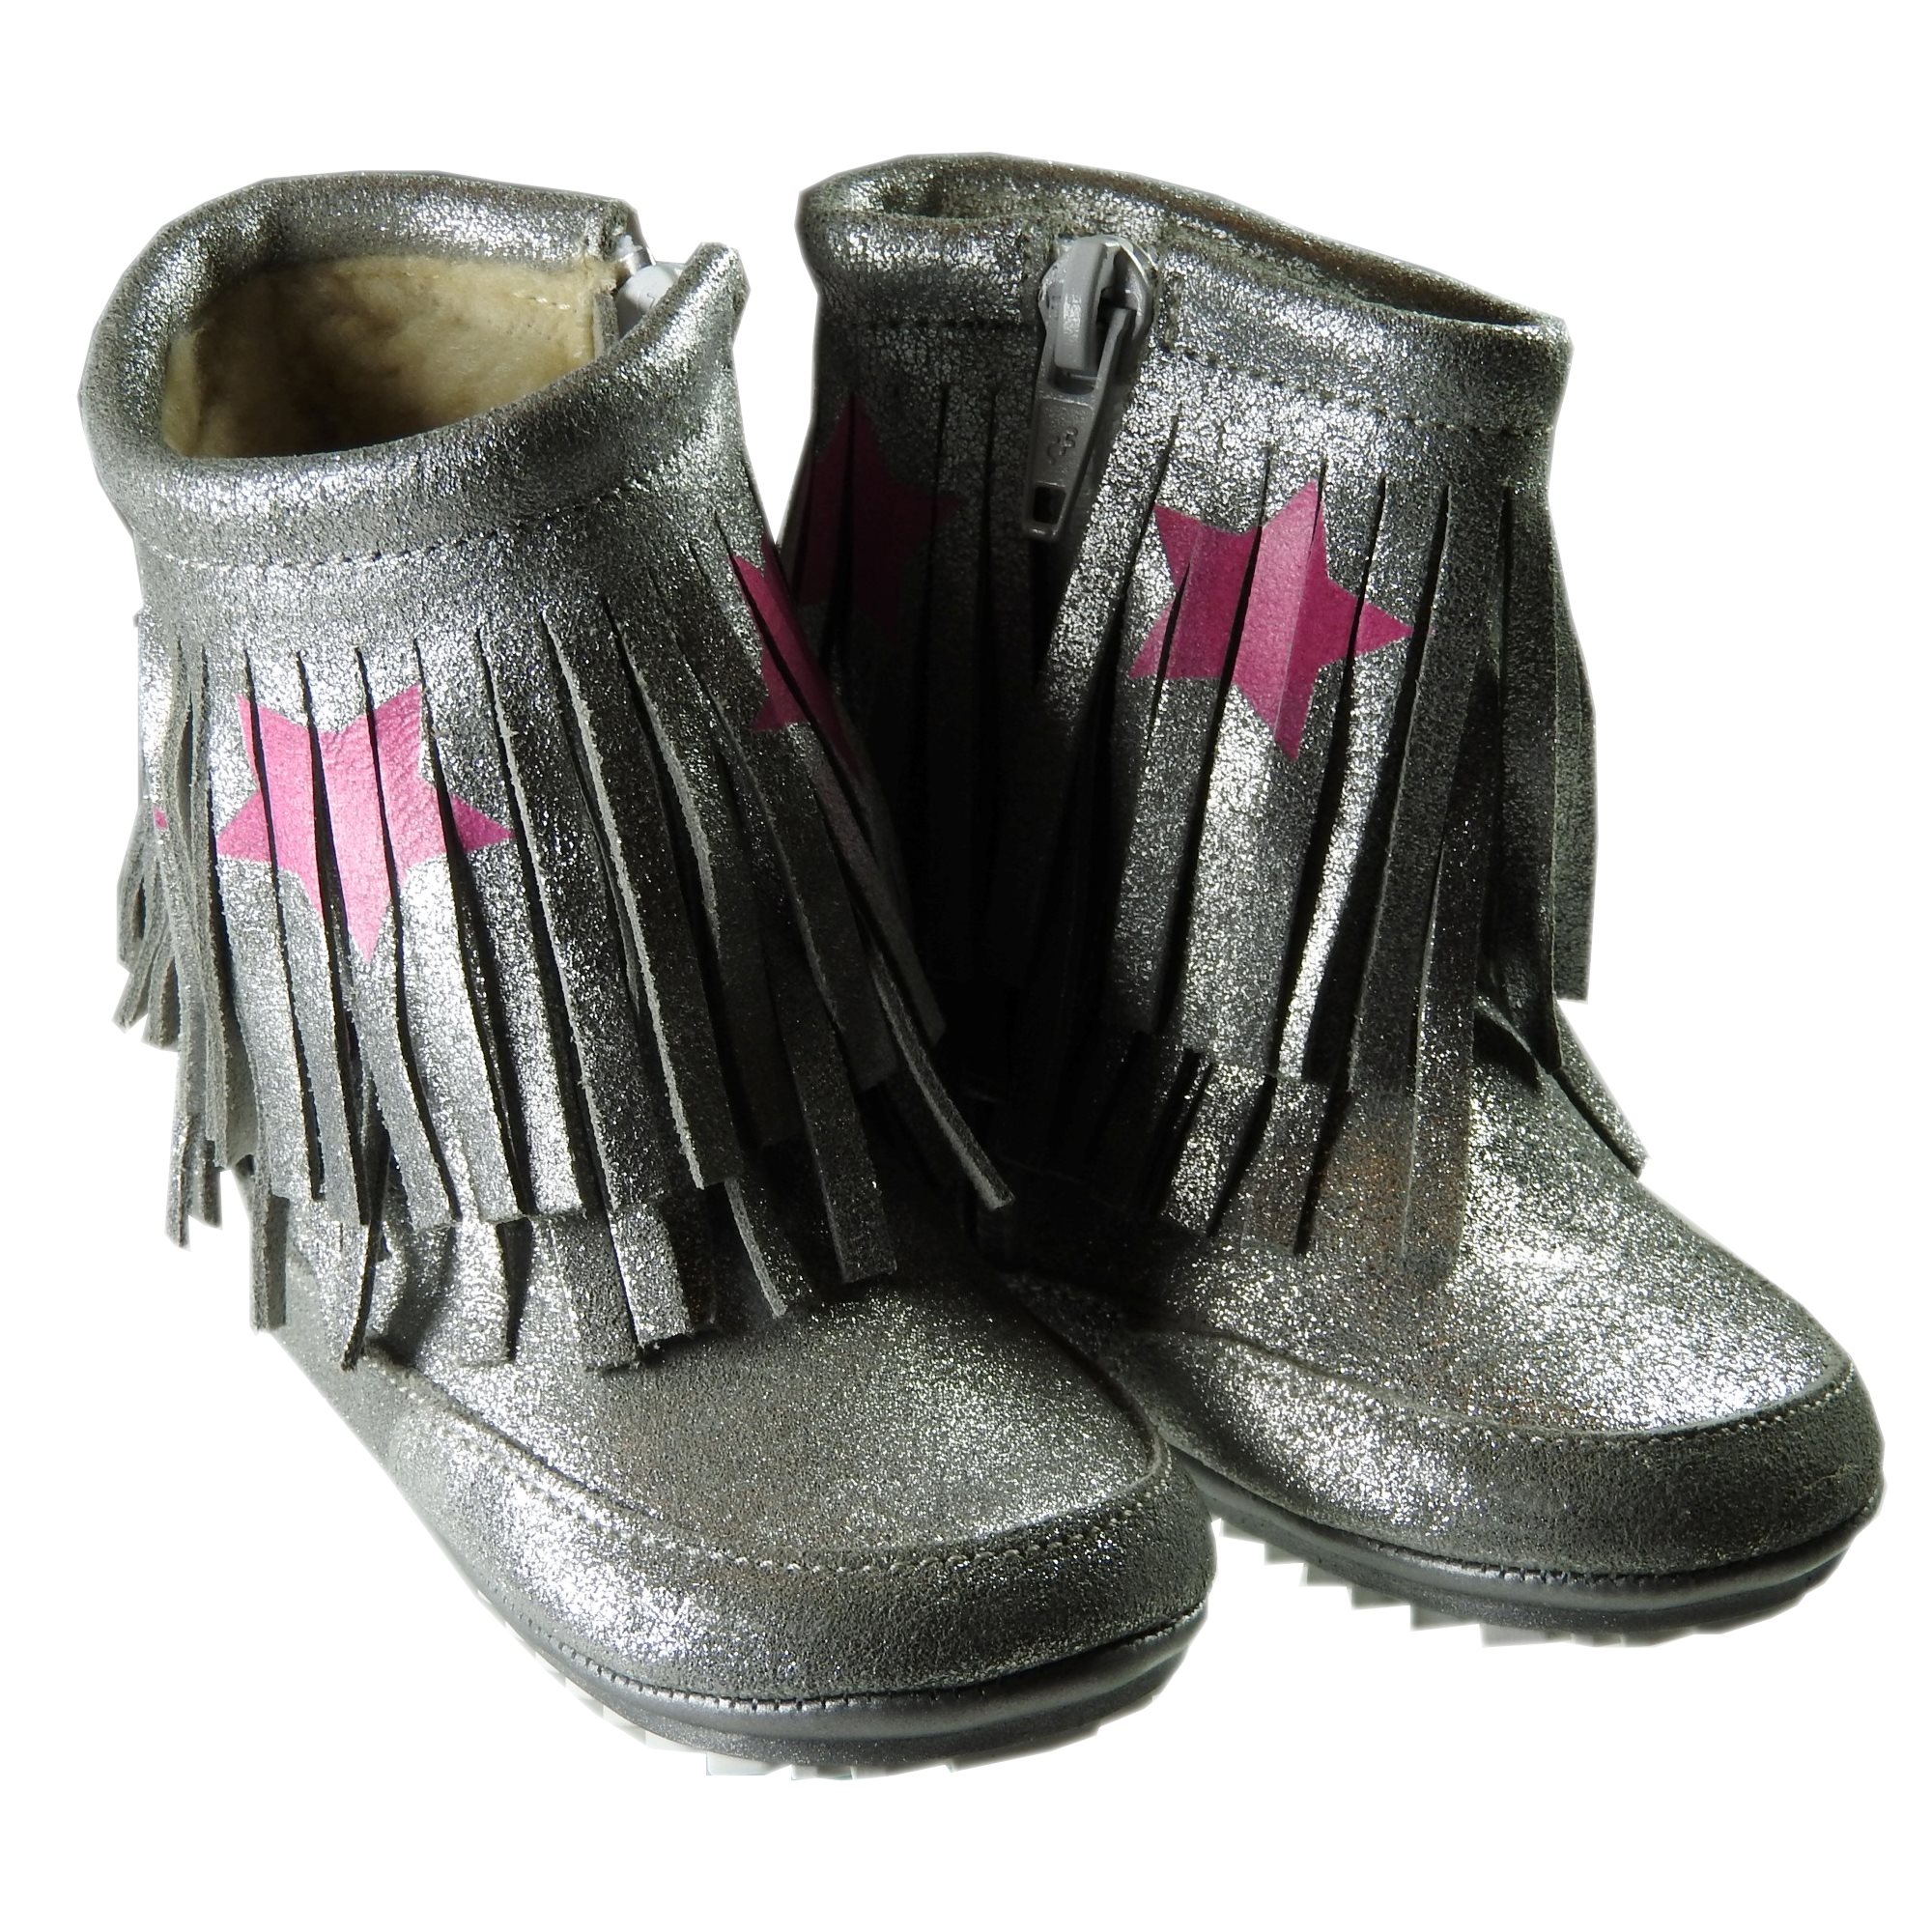 Supplement Buitenland kampioen Producten - Shoesme laarsje franje ster - La Boite - Kids fashion & shoes